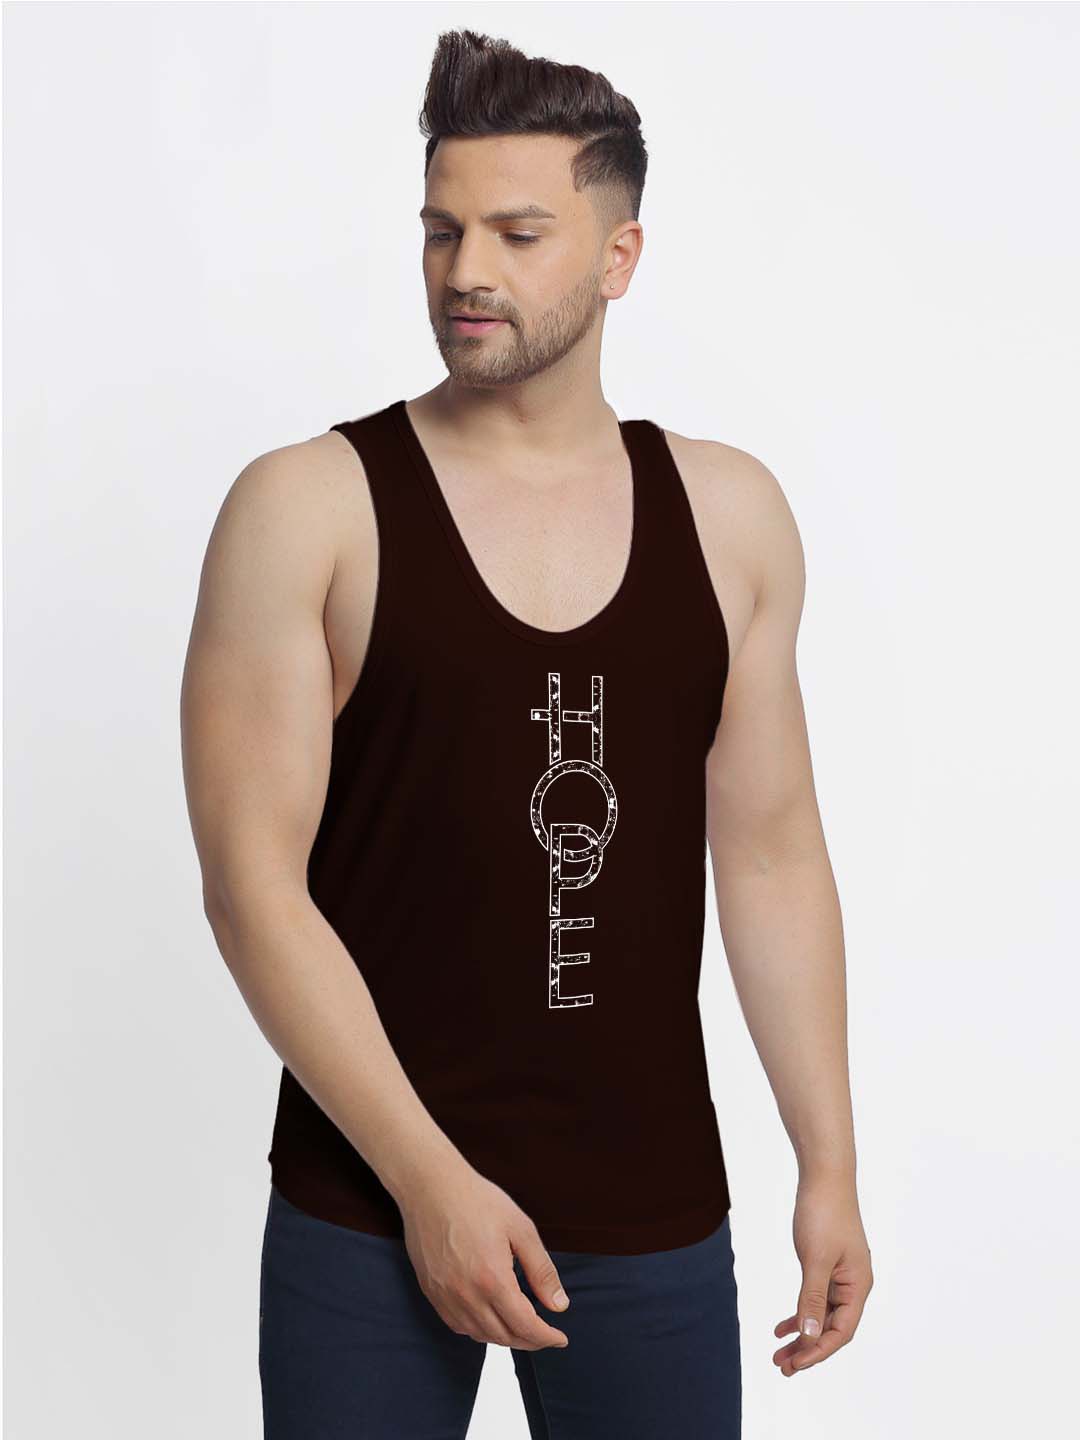 Mens's Hope Printed Innerwear Gym Vest